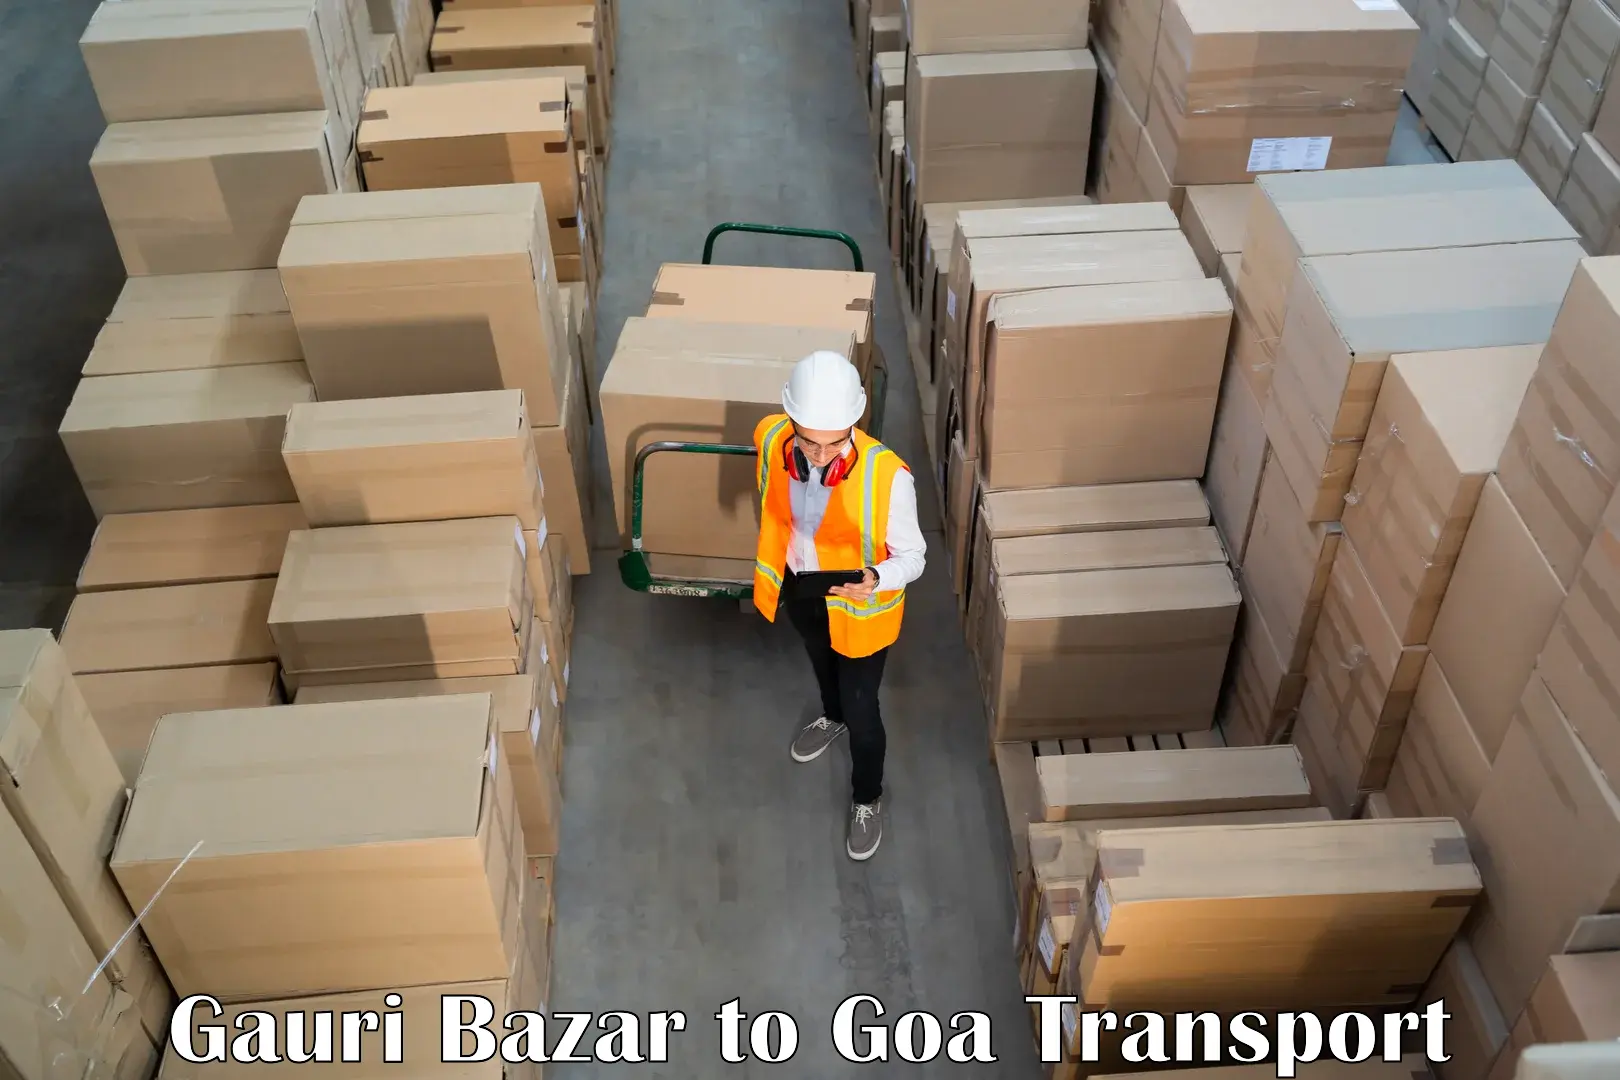 Shipping services Gauri Bazar to Goa